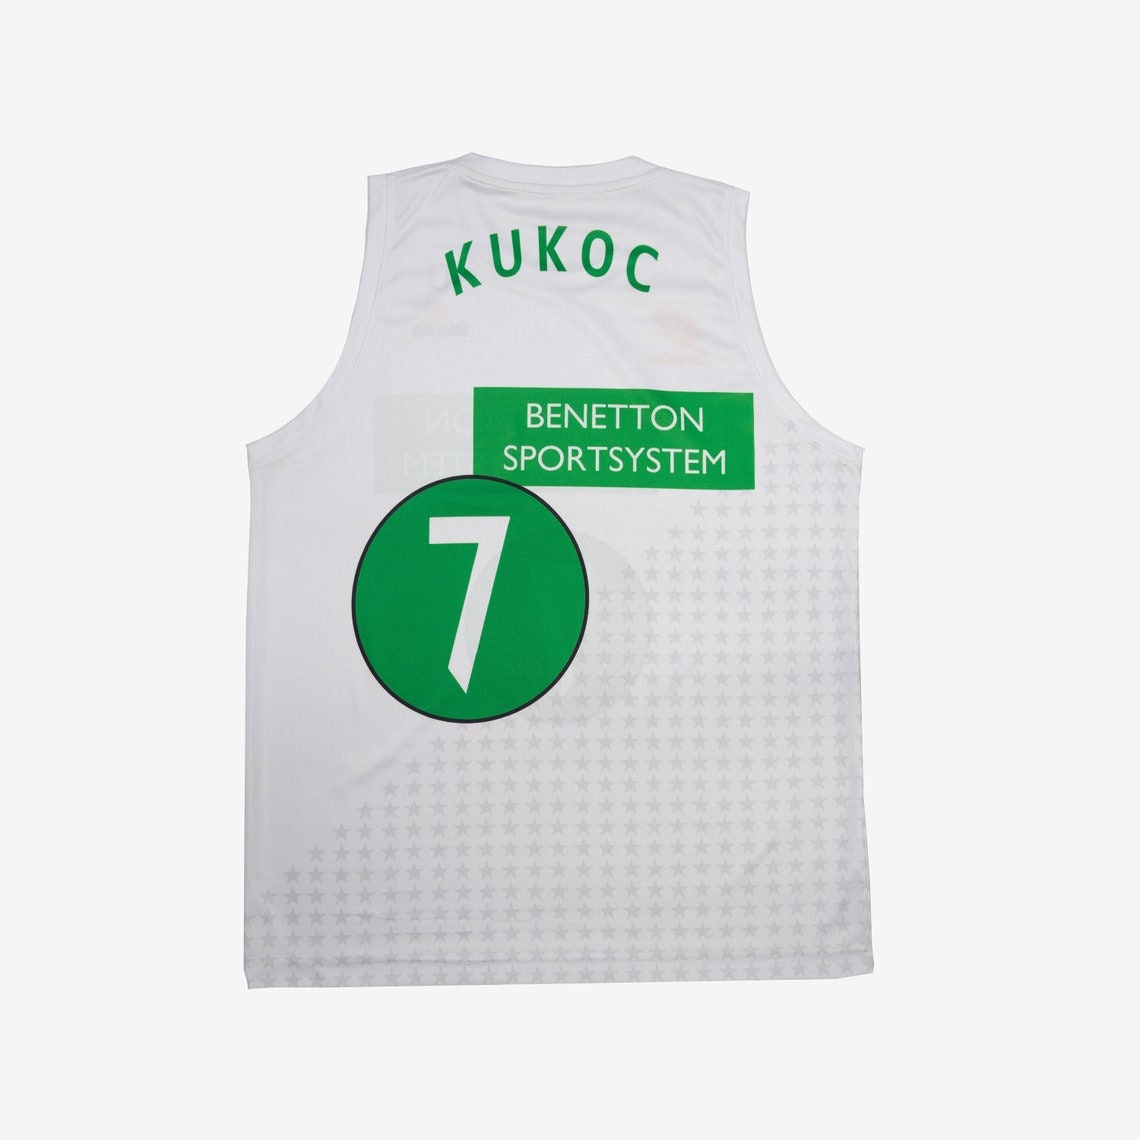 Toni Kukoc Benetton Treviso Basketball Jersey Retro